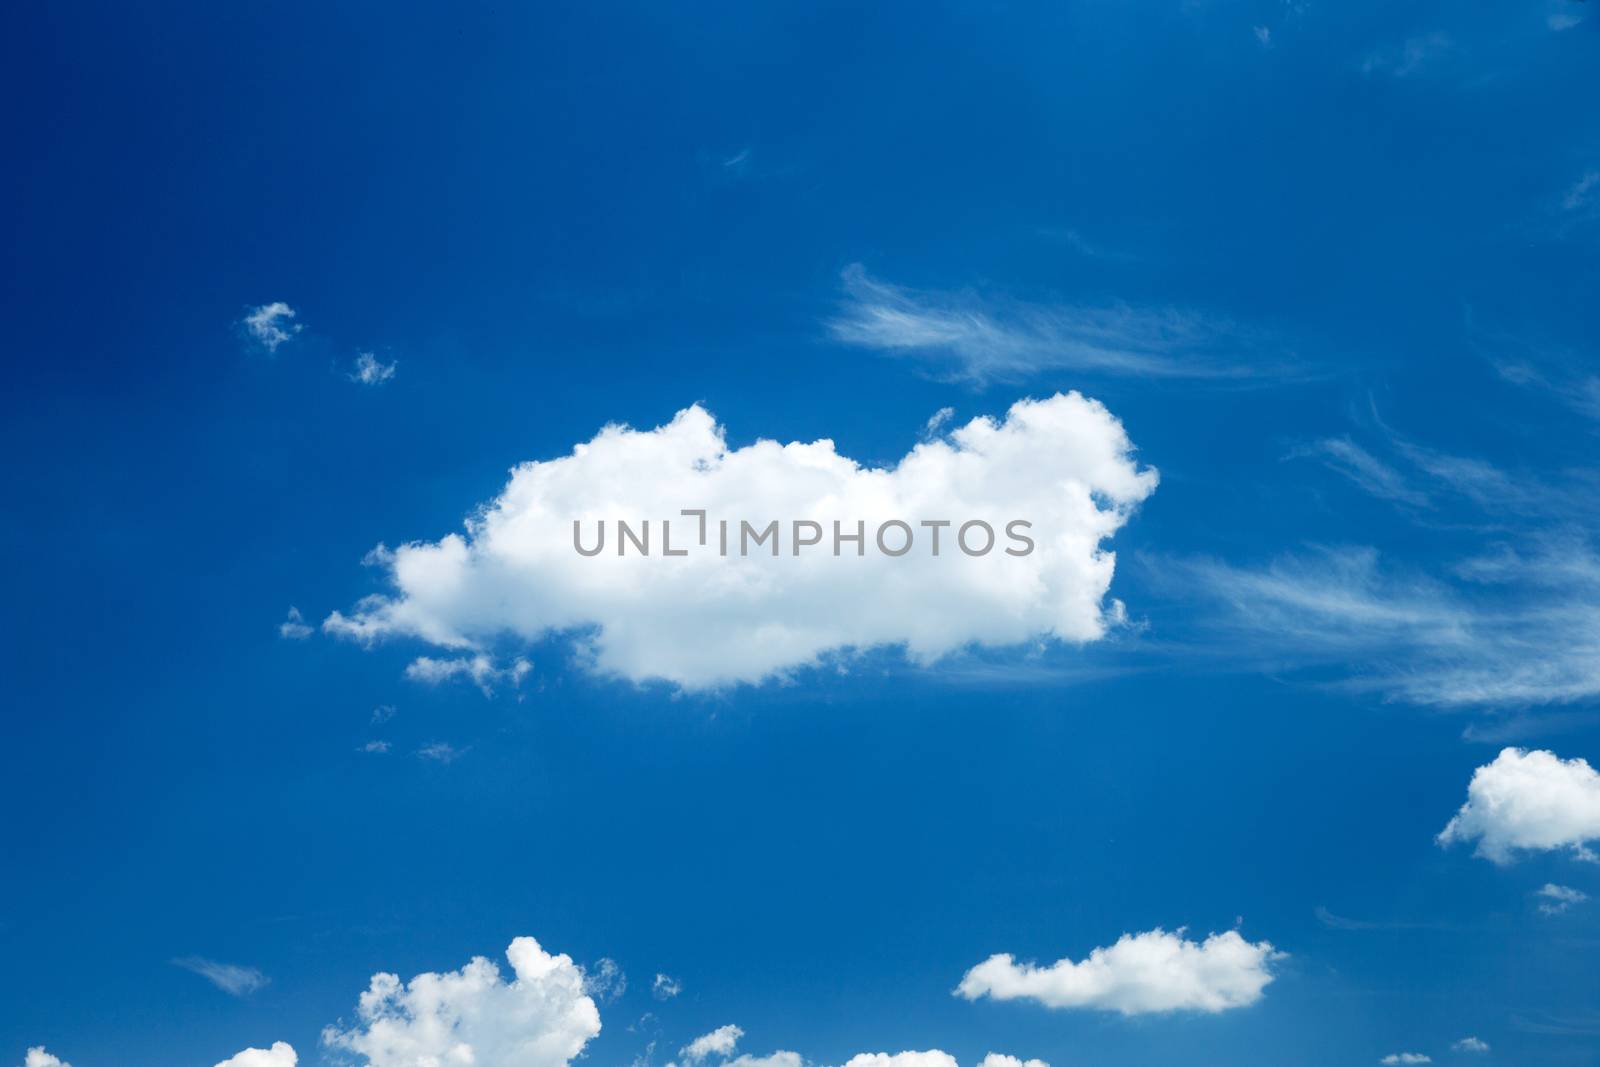 clouds by Pakhnyushchyy